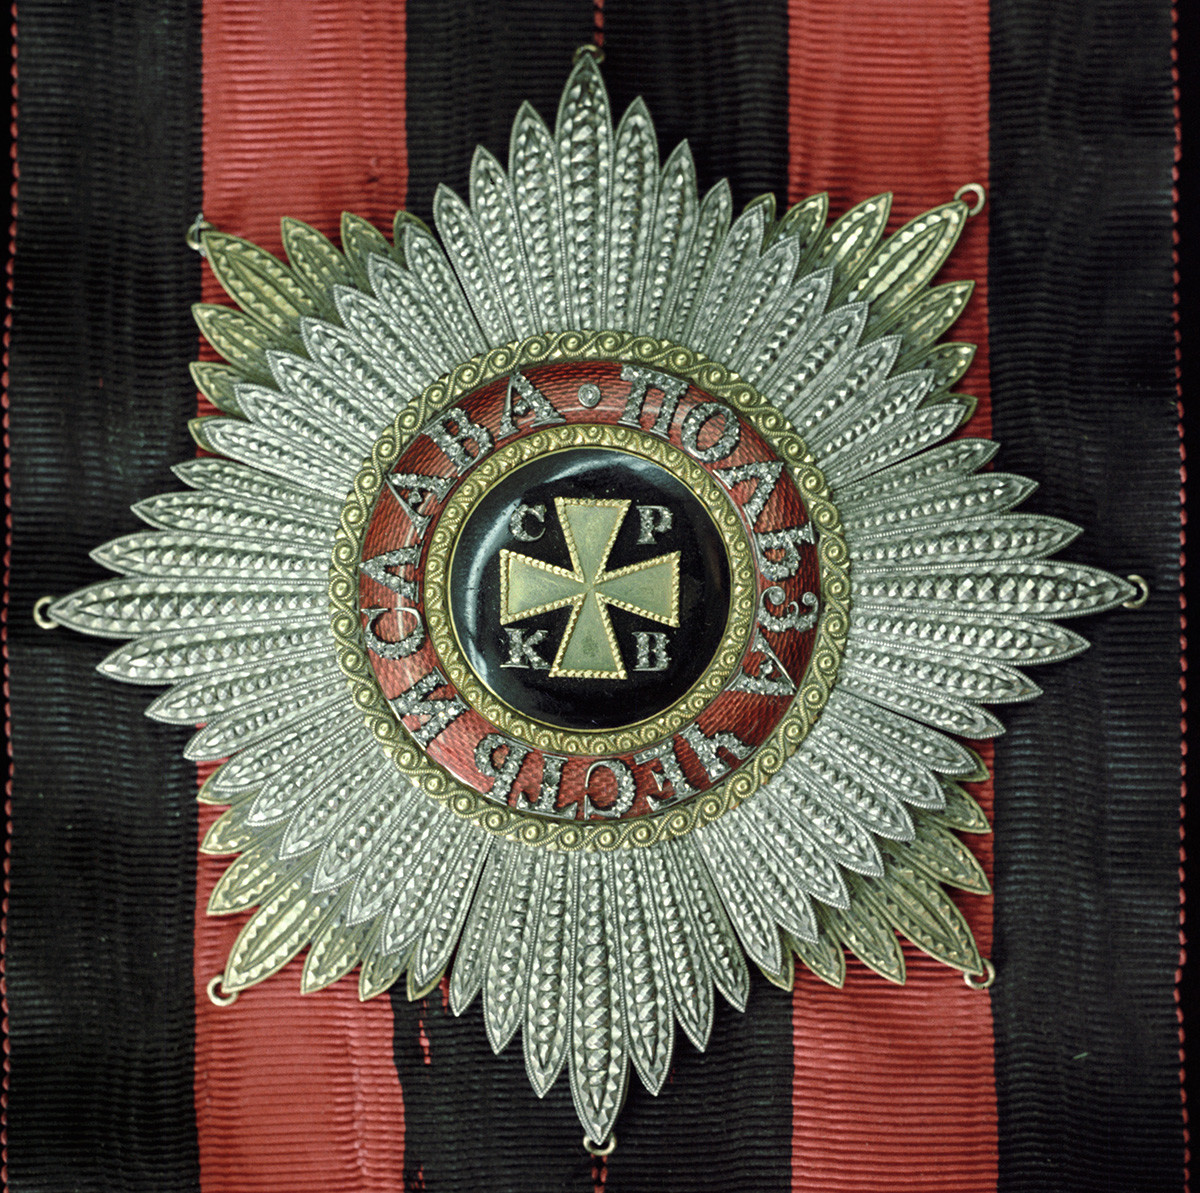  Звезда Ордена светог Владимира првог степена из ризнице Државног историјског музеја.